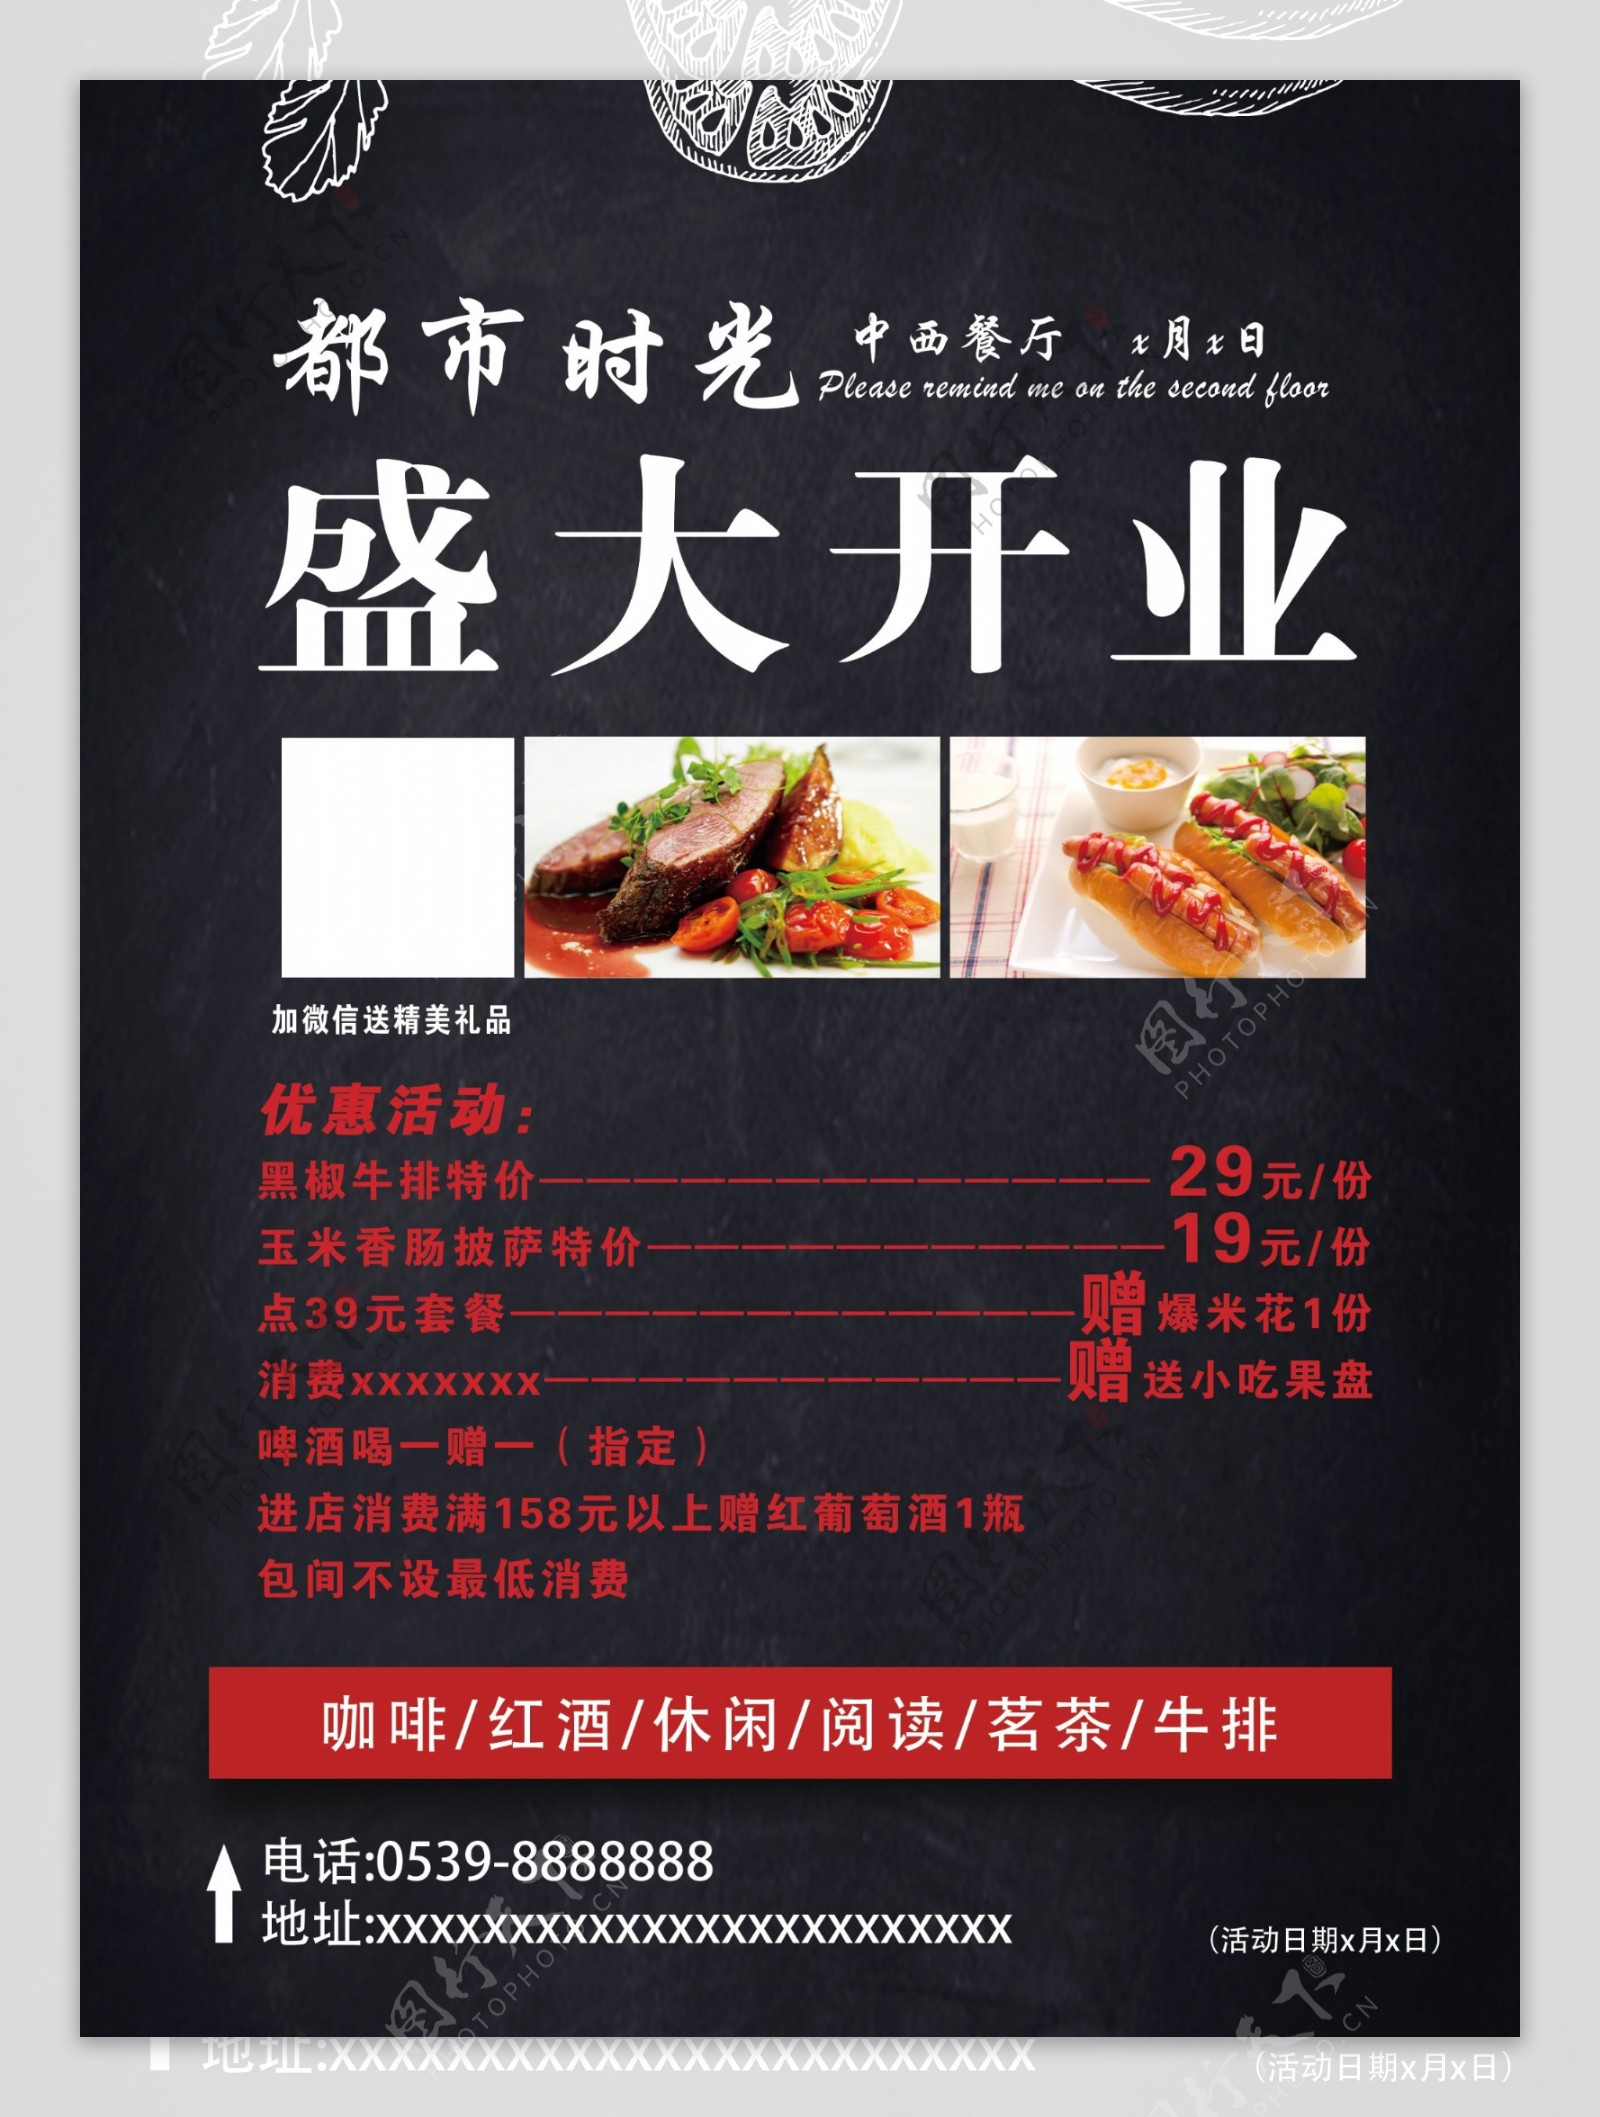 中西餐厅单页